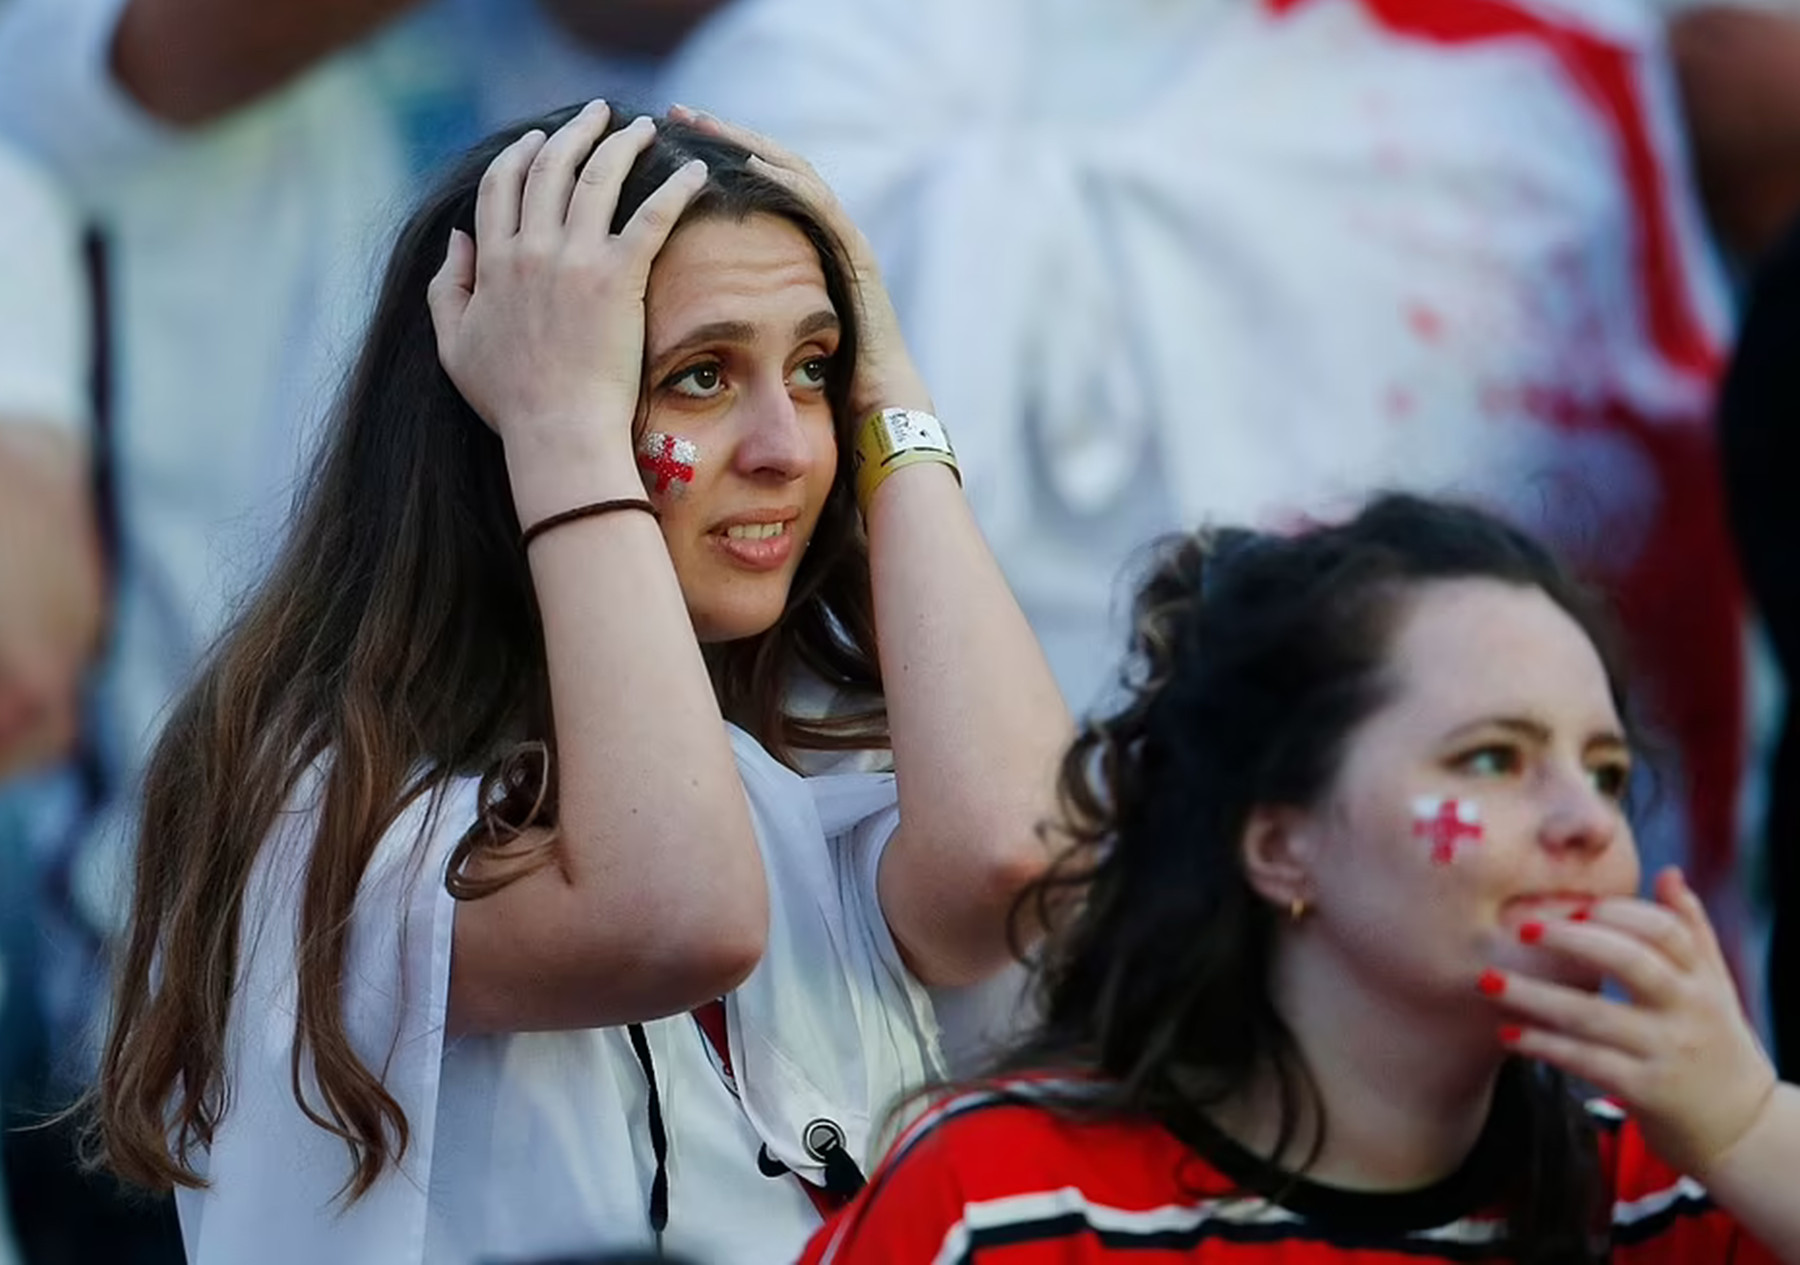 Φίλαθλοι στο Euro 2021: Καταστροφικός ο συνωστισμός, λέει ο ΠΟΥ